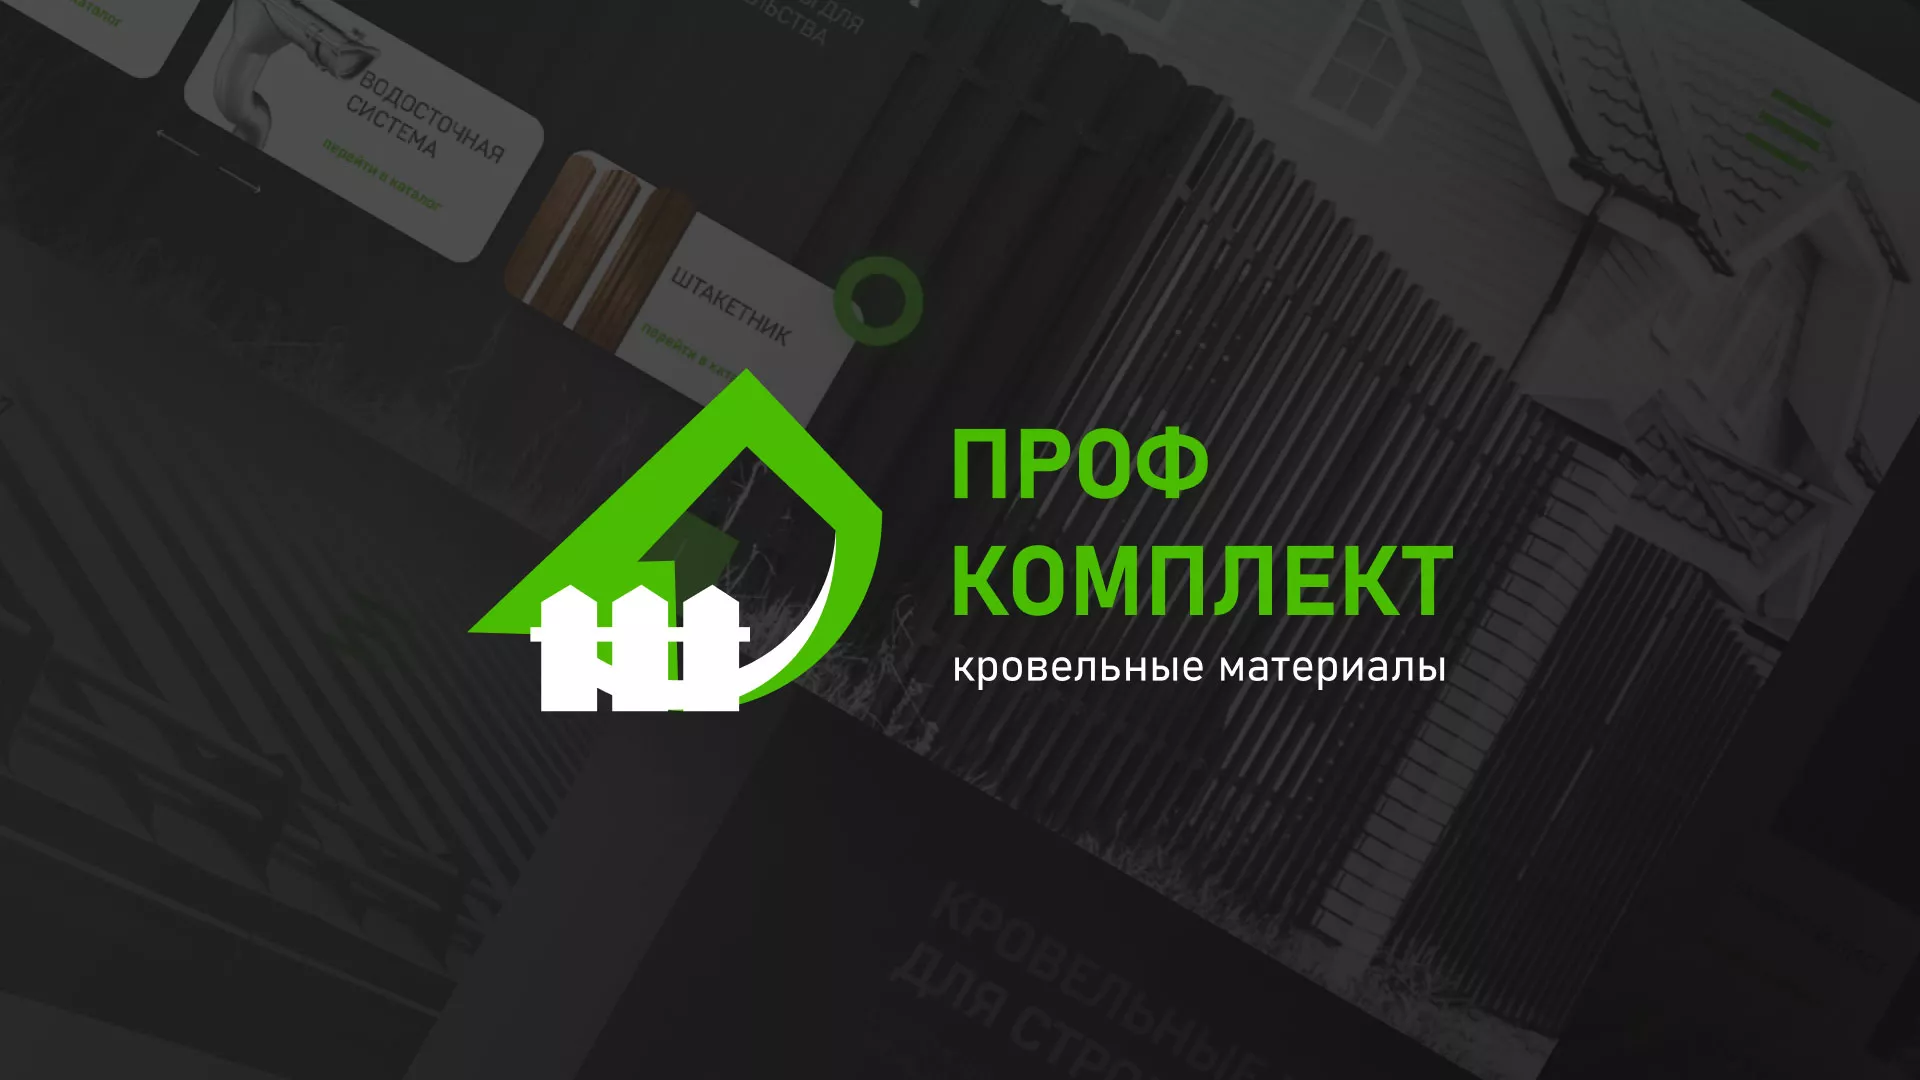 Создание сайта компании «Проф Комплект» в Ладушкине